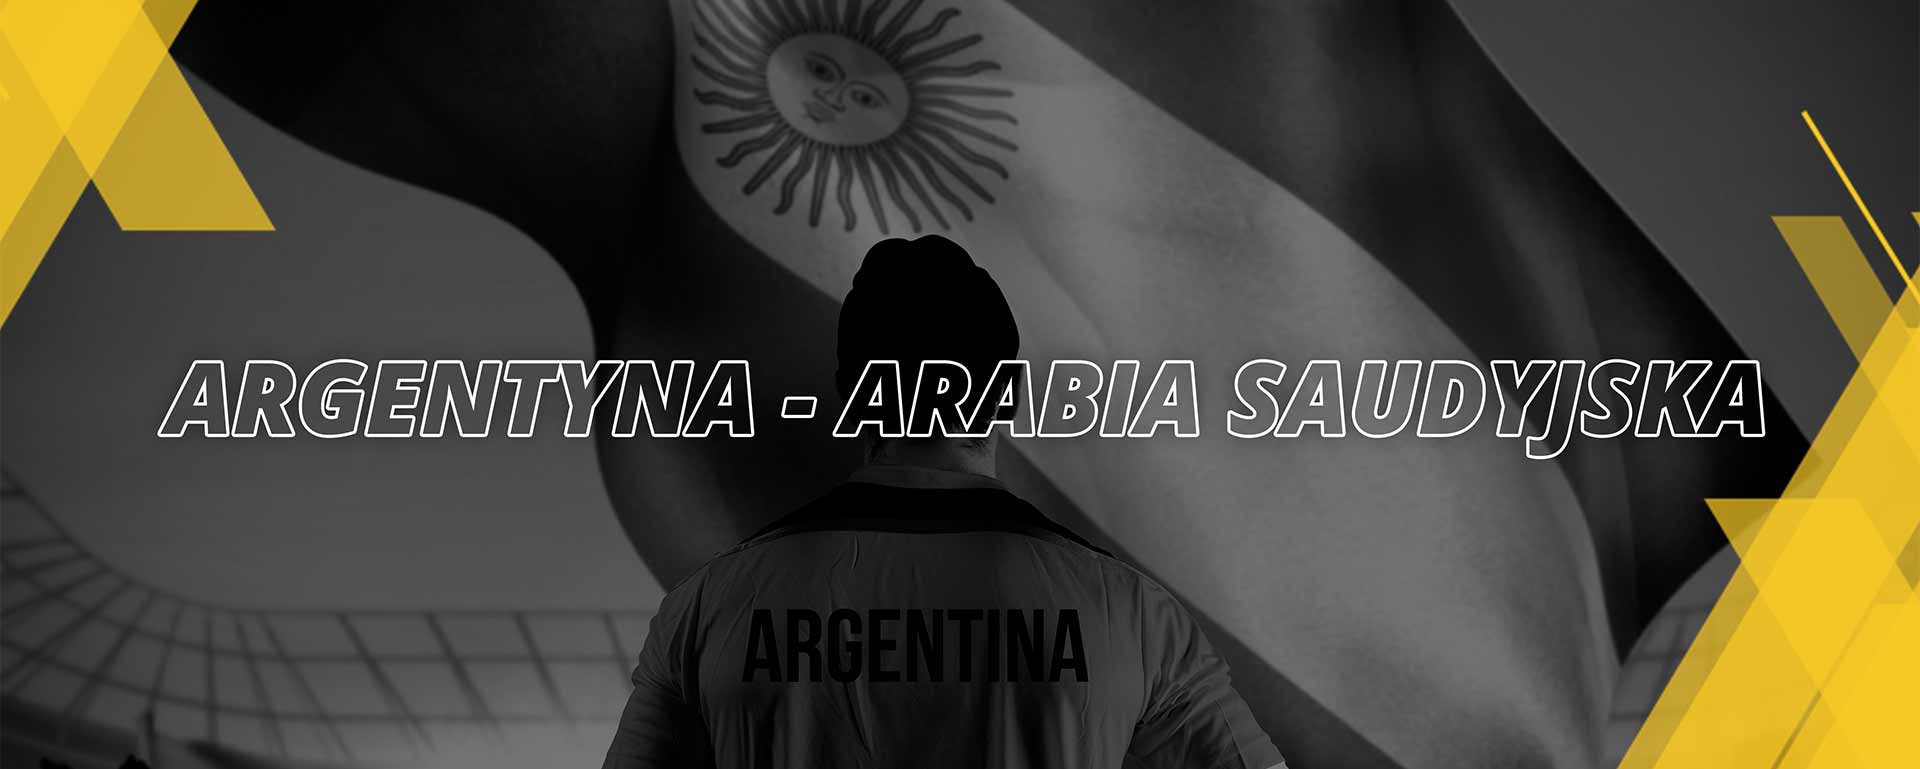 Argentyna – Arabia Saudyjska | Mistrzostwa Świata FIFA Katar 2022